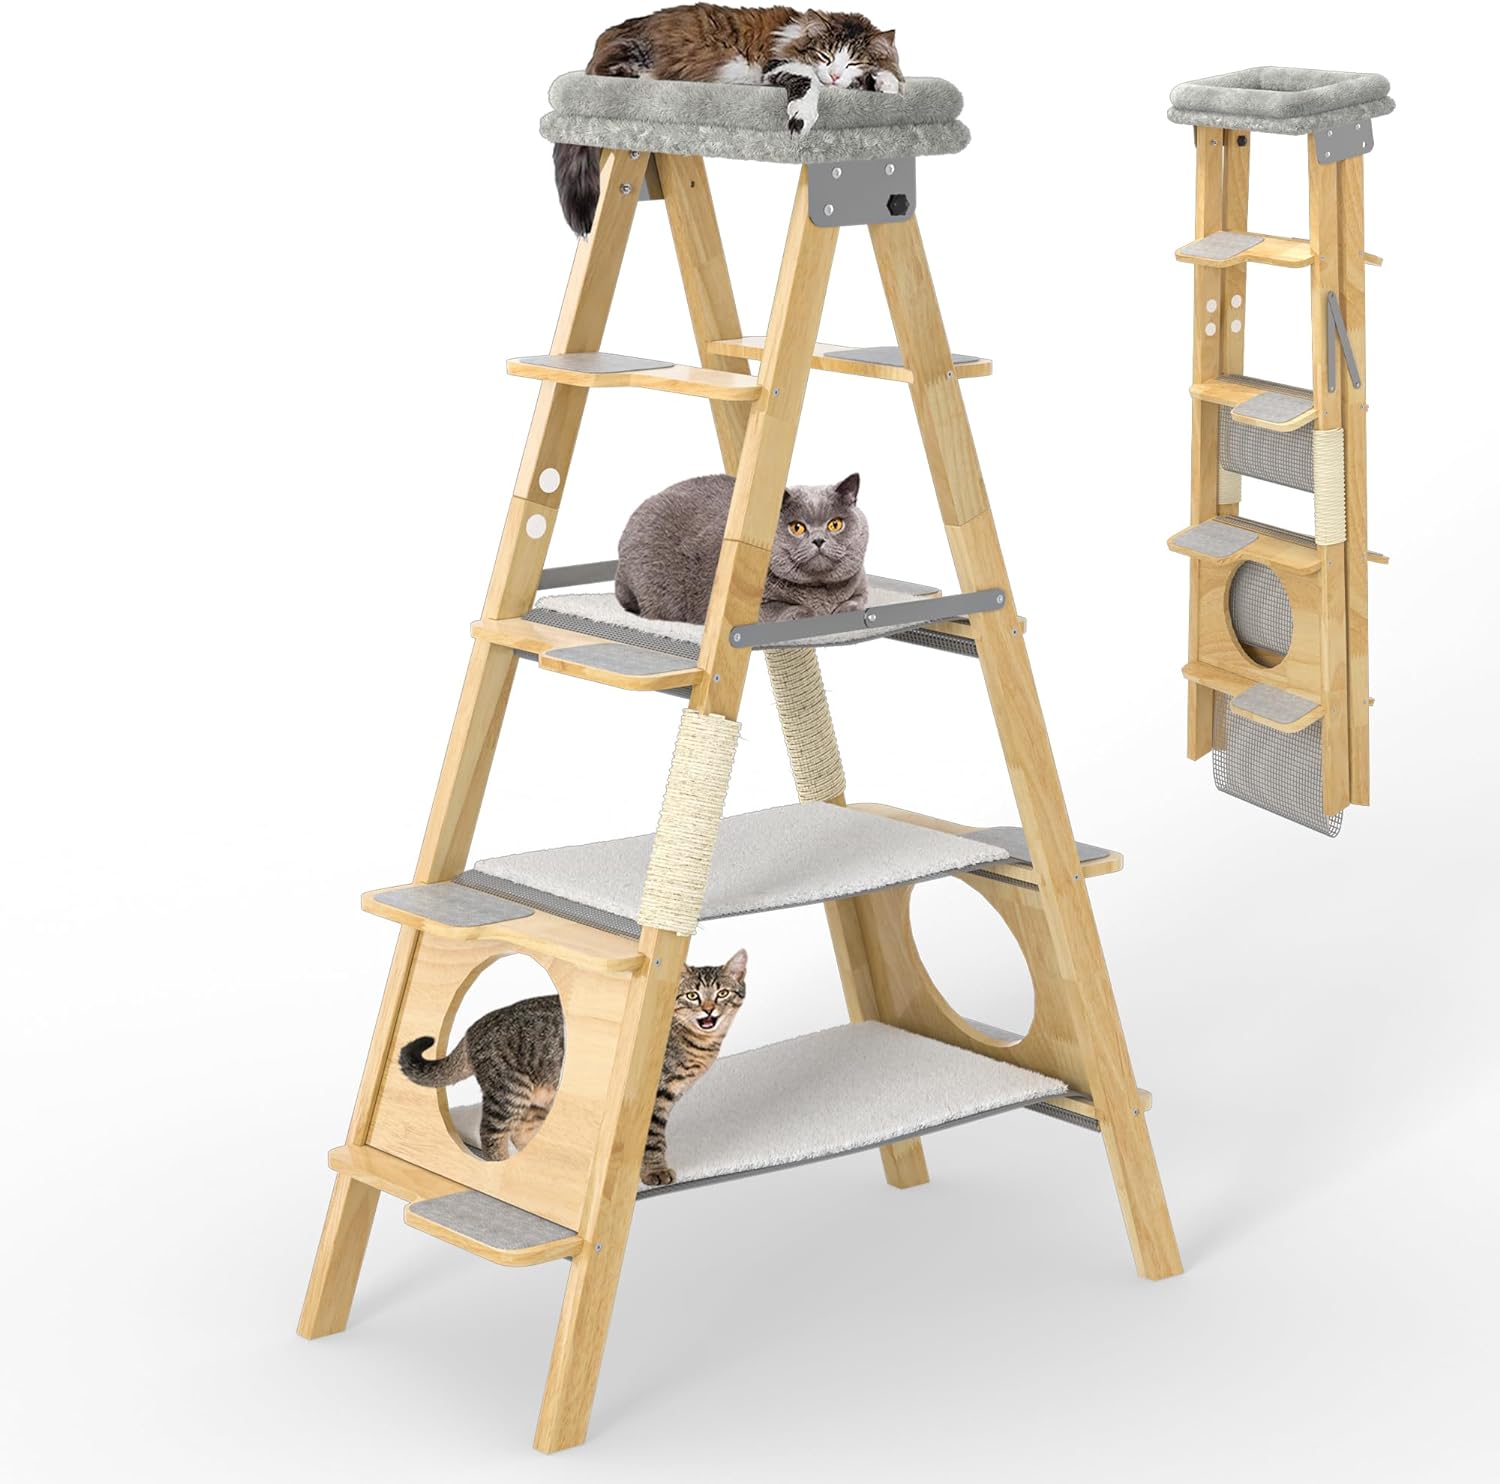 GDLF Moderno árbol de madera para gatos con diseño de escalera plegabl -  VIRTUAL MUEBLES